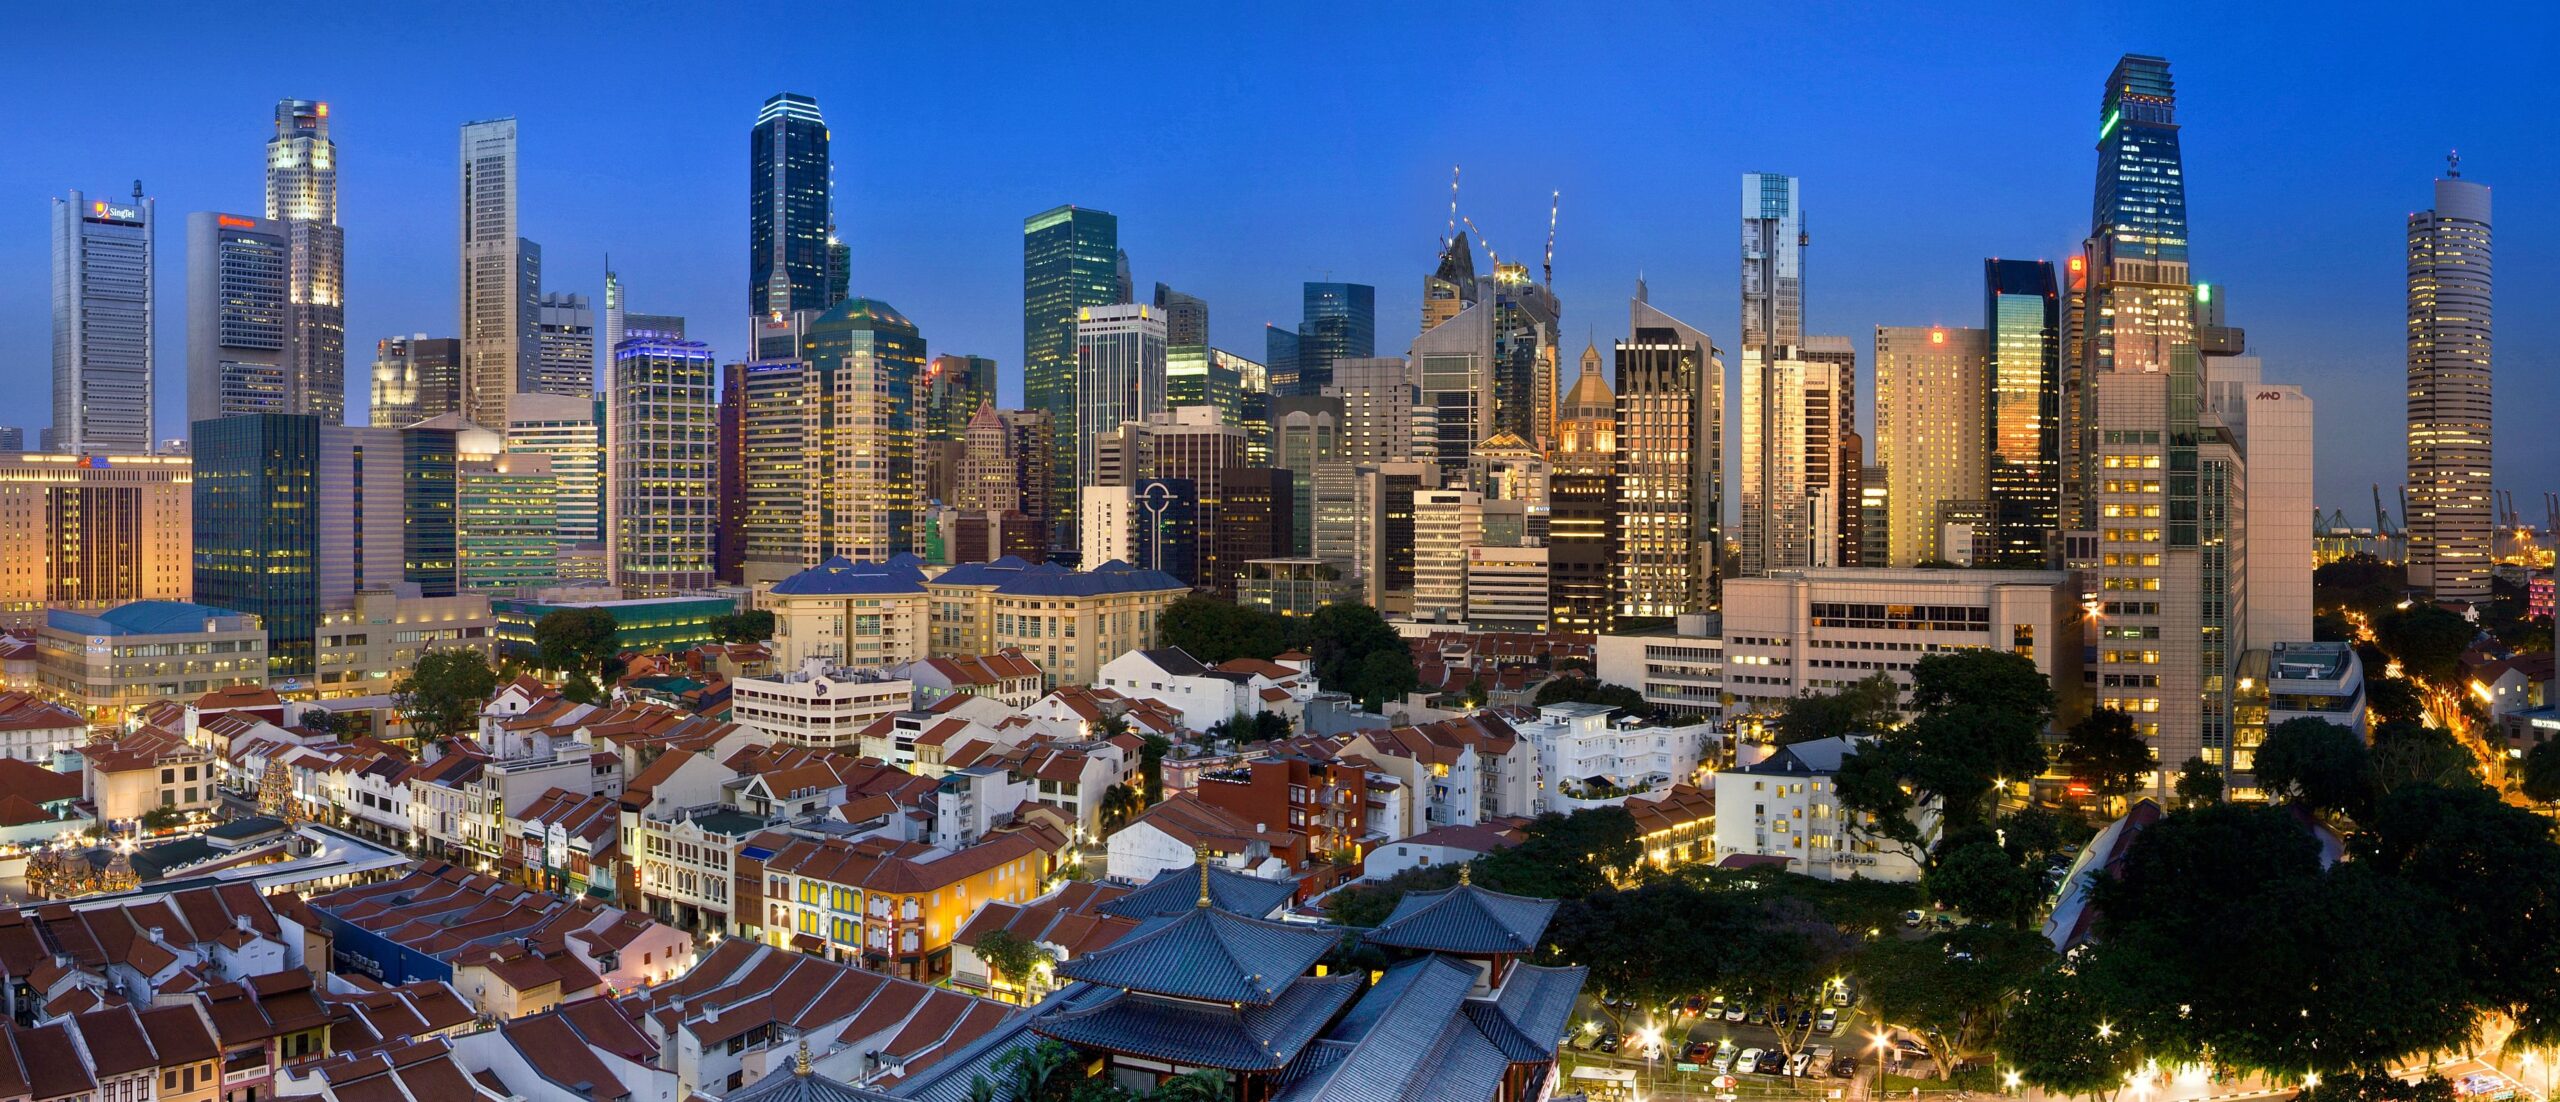 Il Singapore Central Business District (CBD) dell'omonima città-stato in un'immagine panoramica